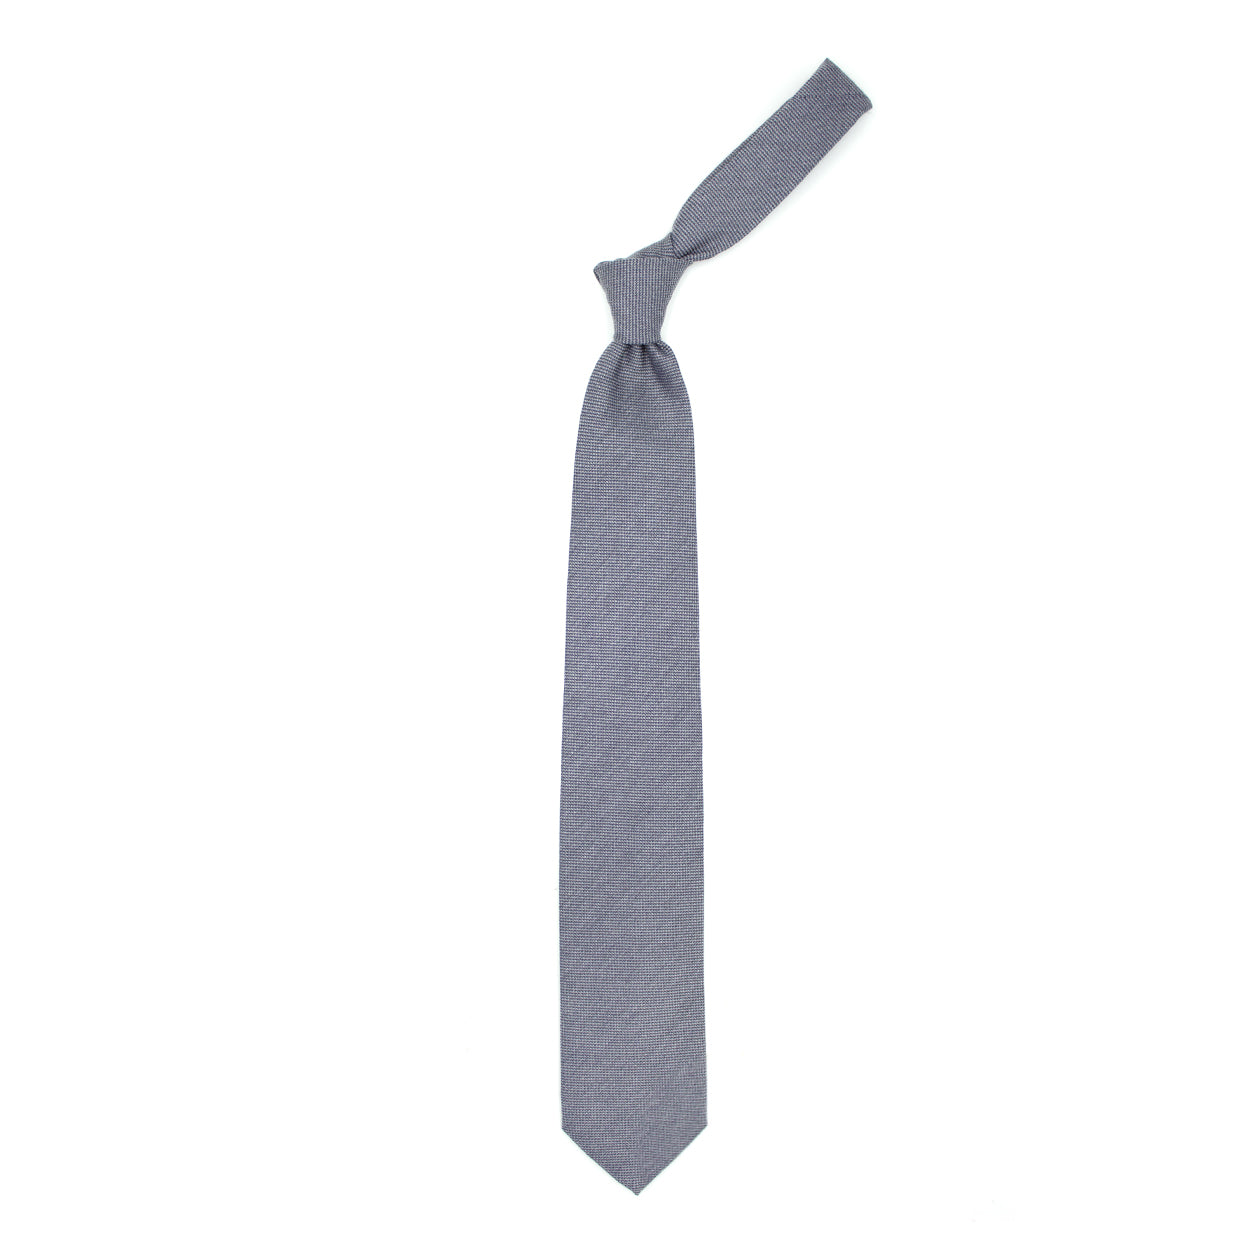 Light grey textured tie